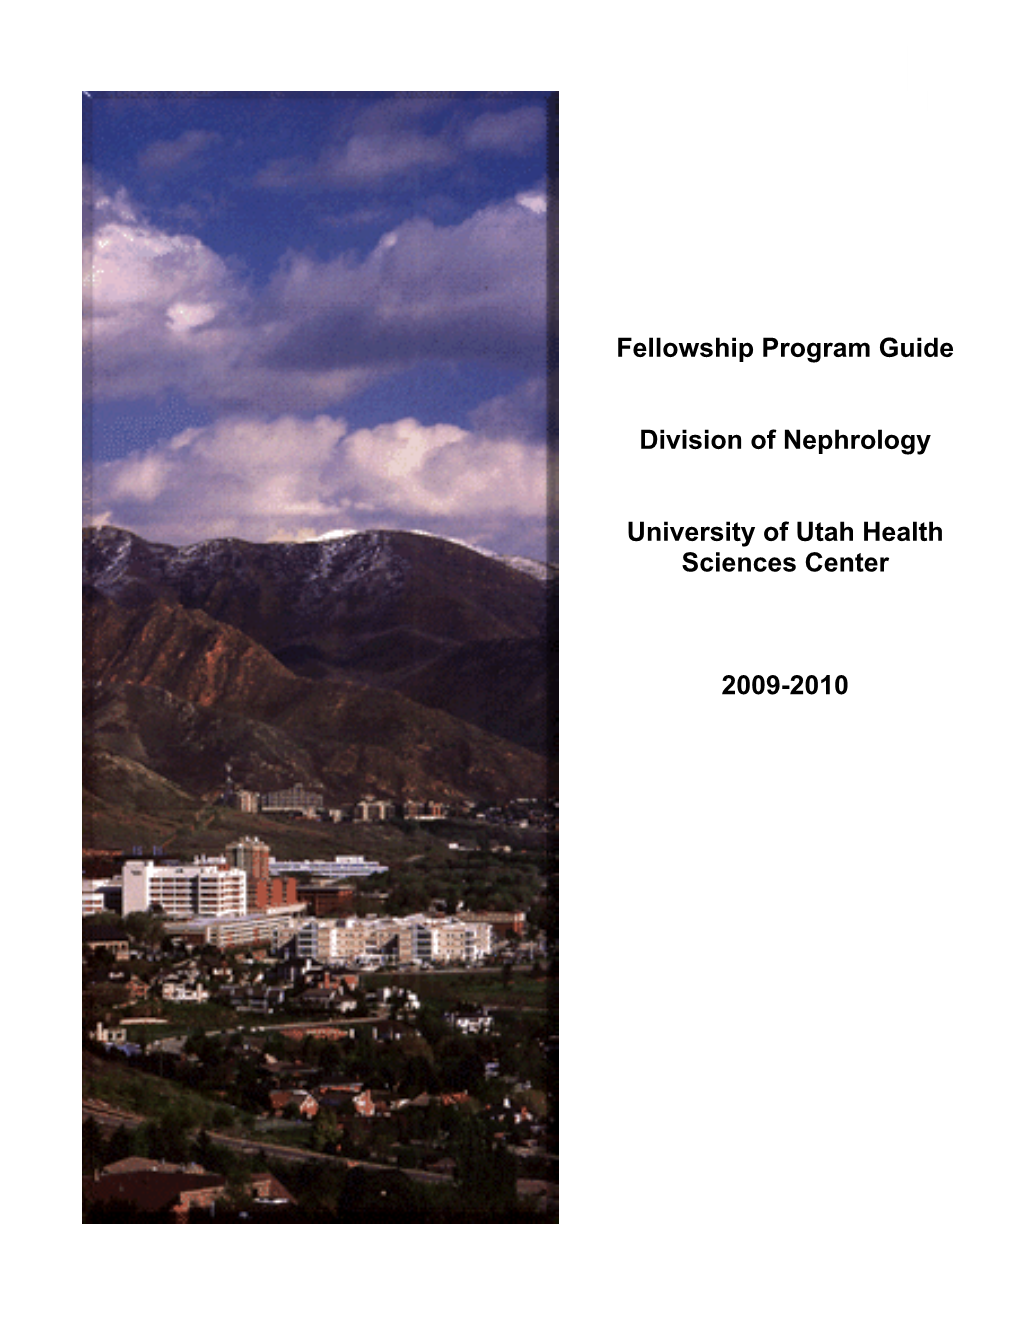 University of Utah Nephrology Fellowship Program